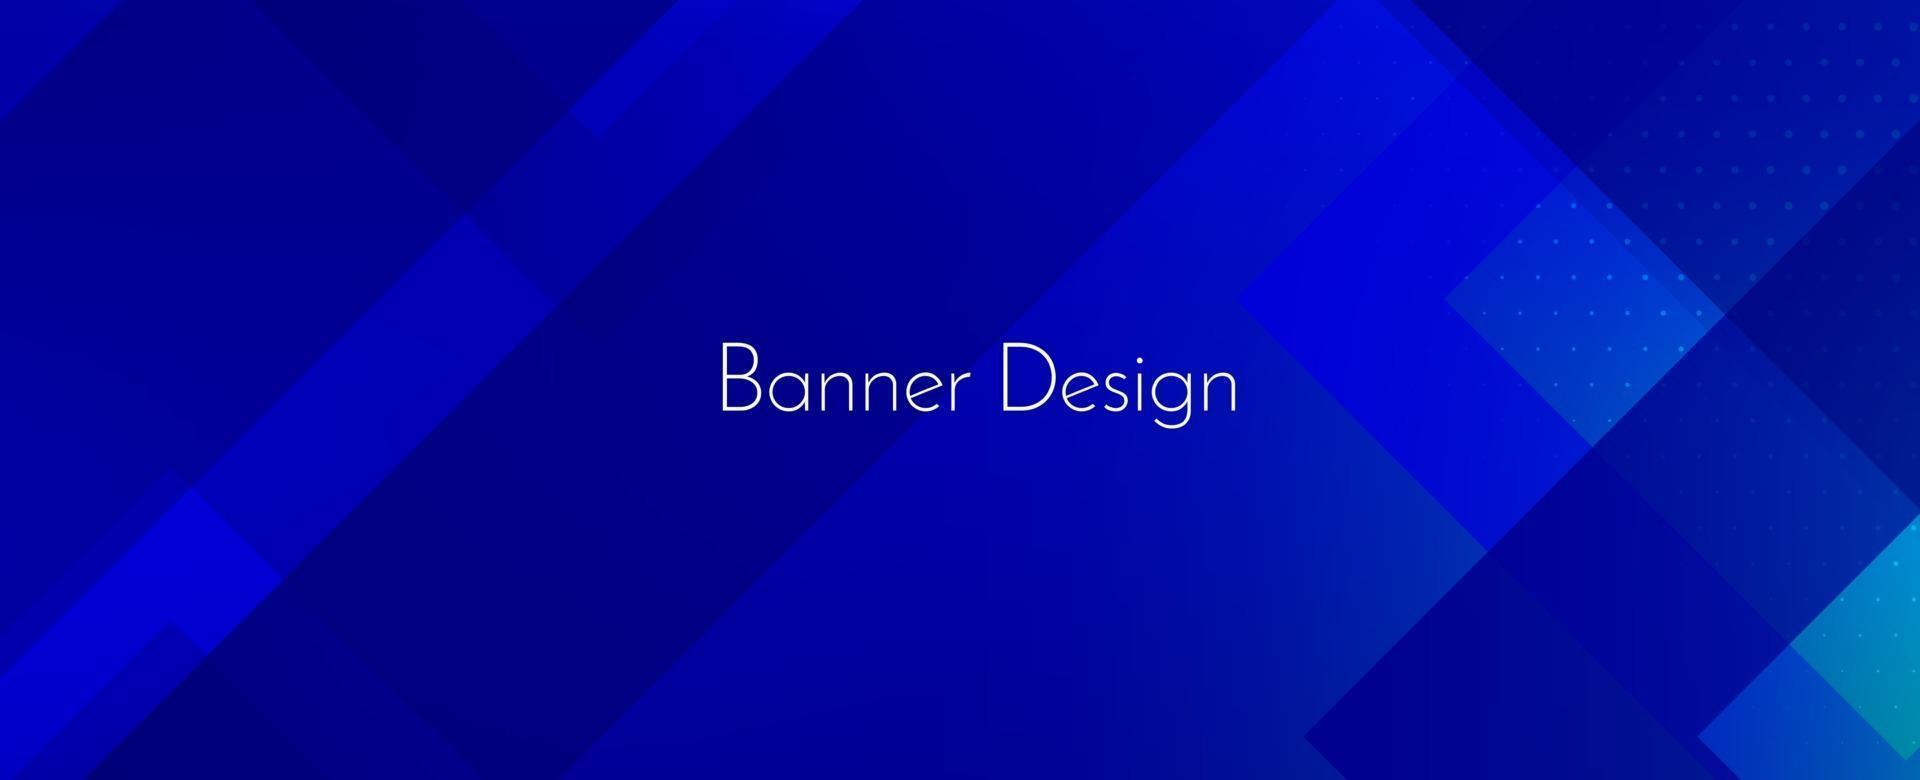 abstracte geometrische blauwe decoratieve moderne banner ontwerp achtergrond vector